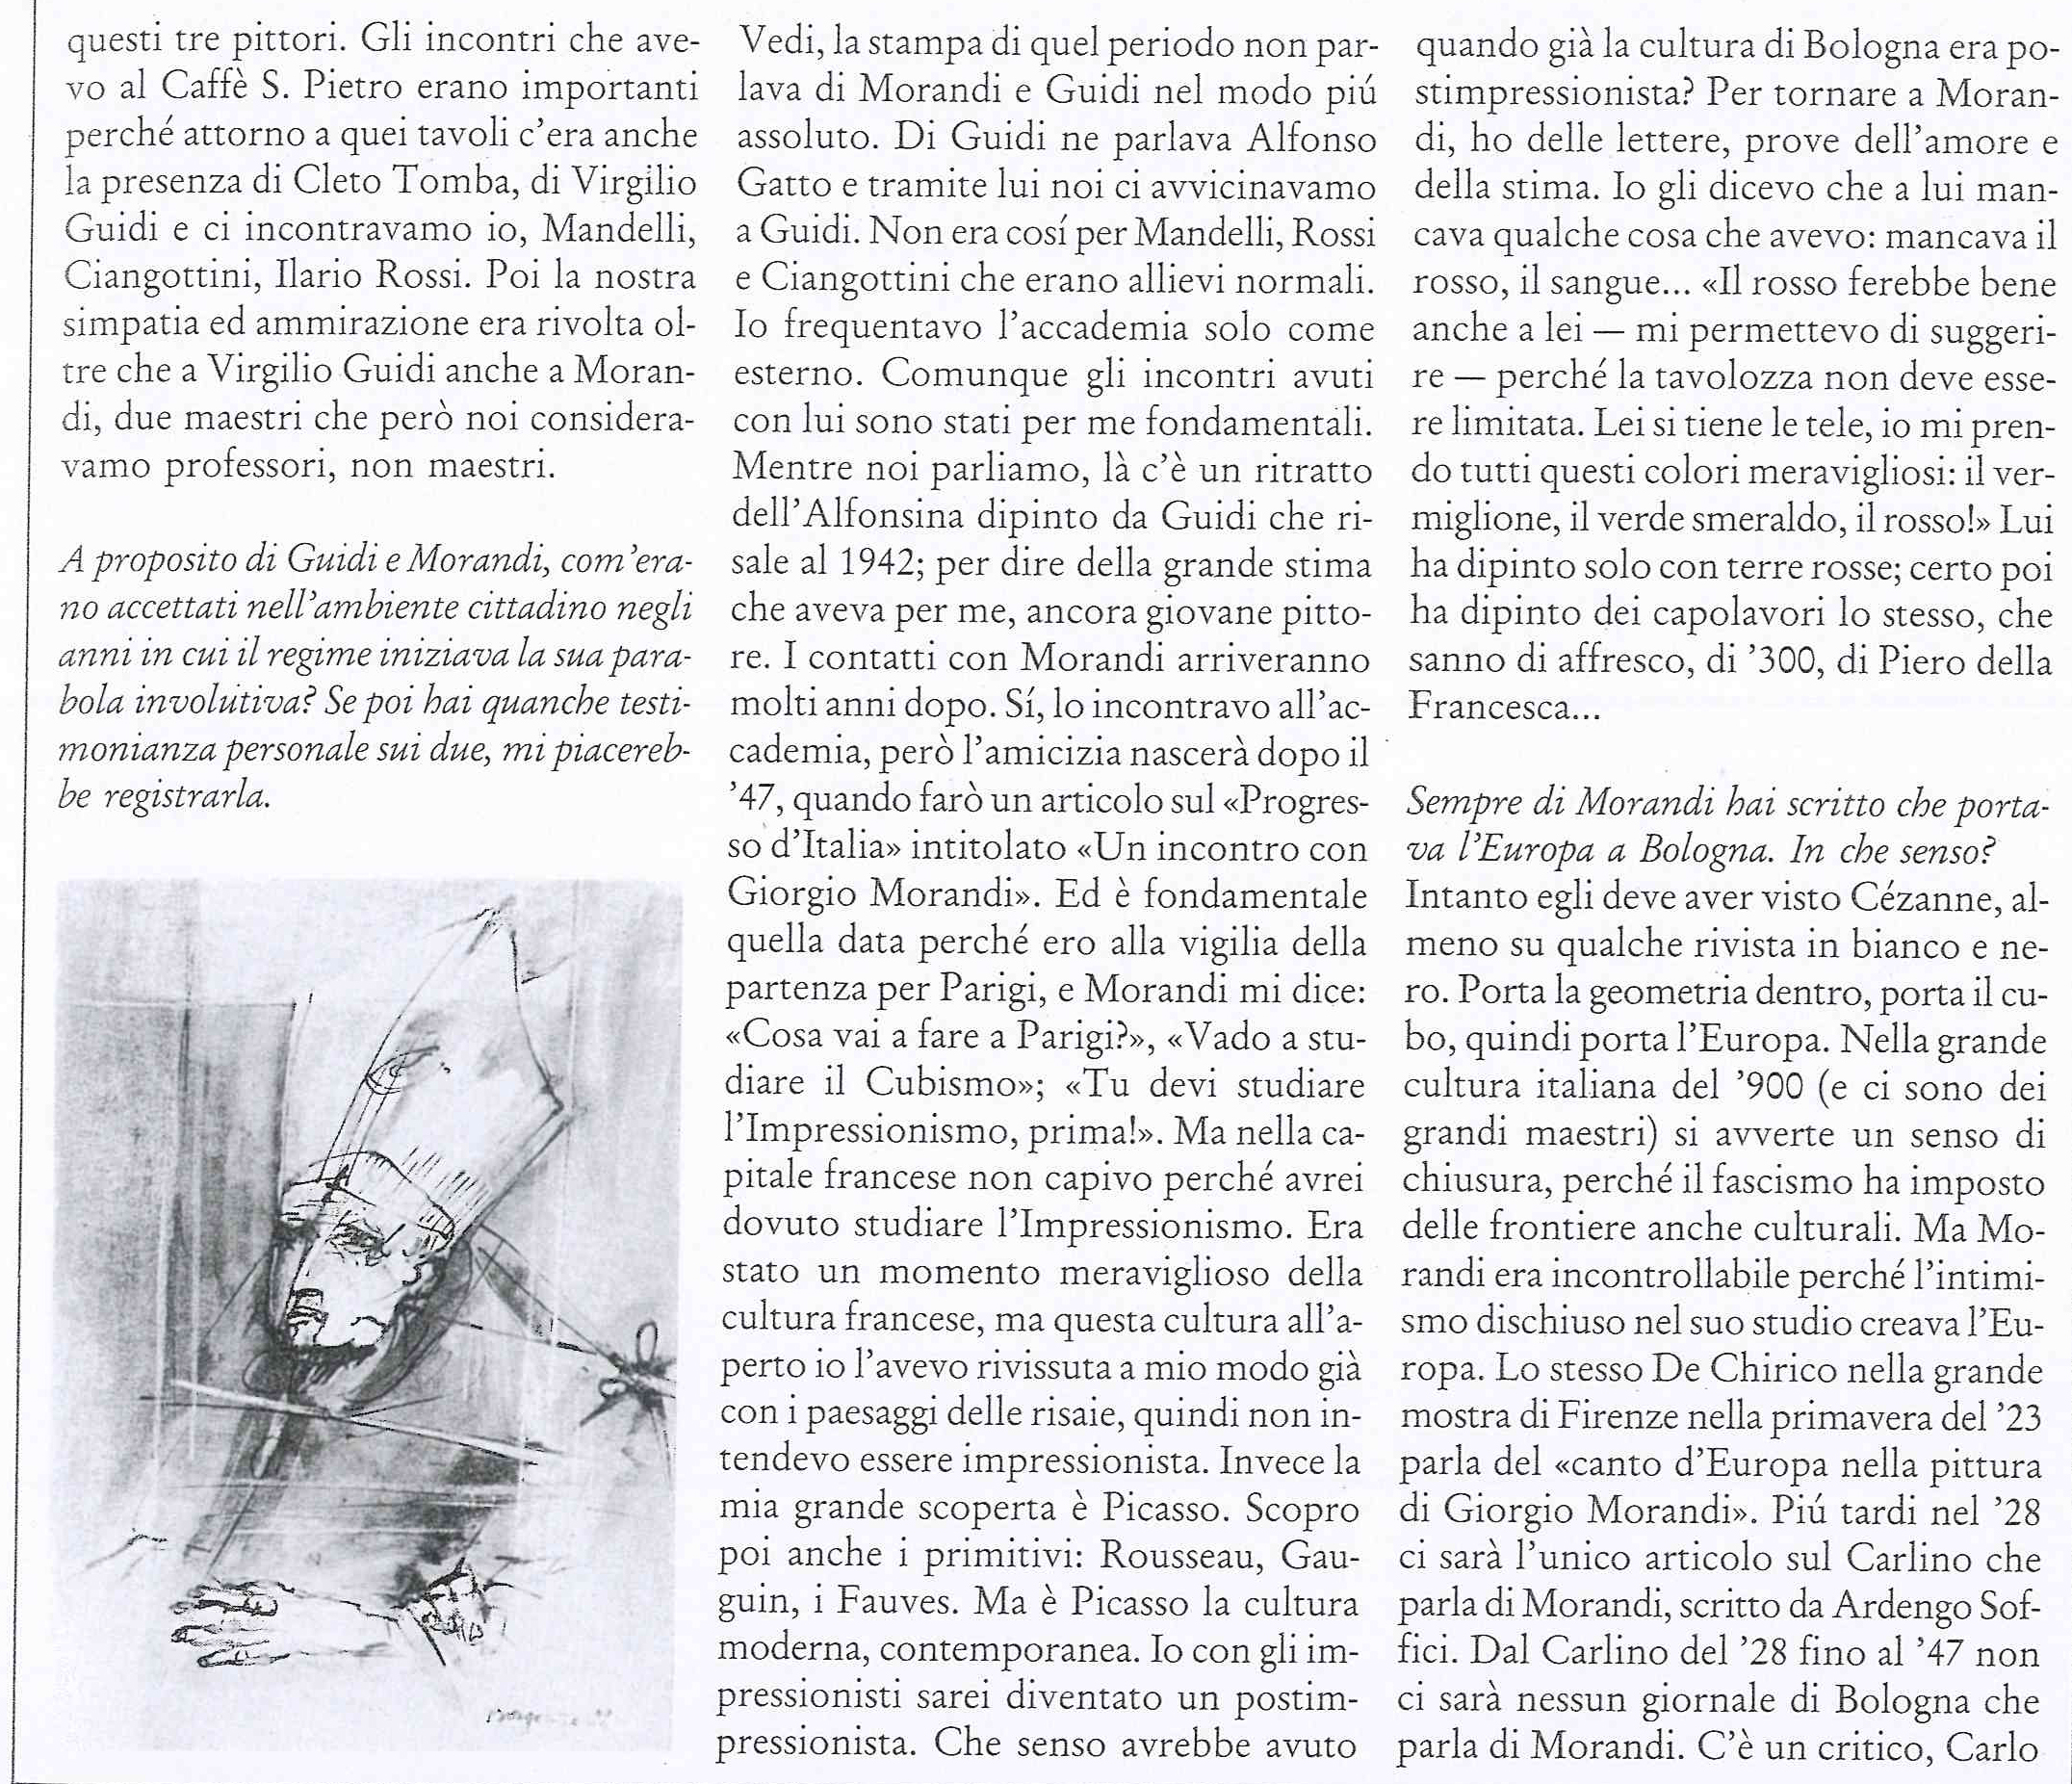 Intervista di L. Strozzieri a A. Borgonzoni, in M.A. Baitello, L. Strozzieri, Borgonzoni, Pescara, Artechiara, 1986, p.49